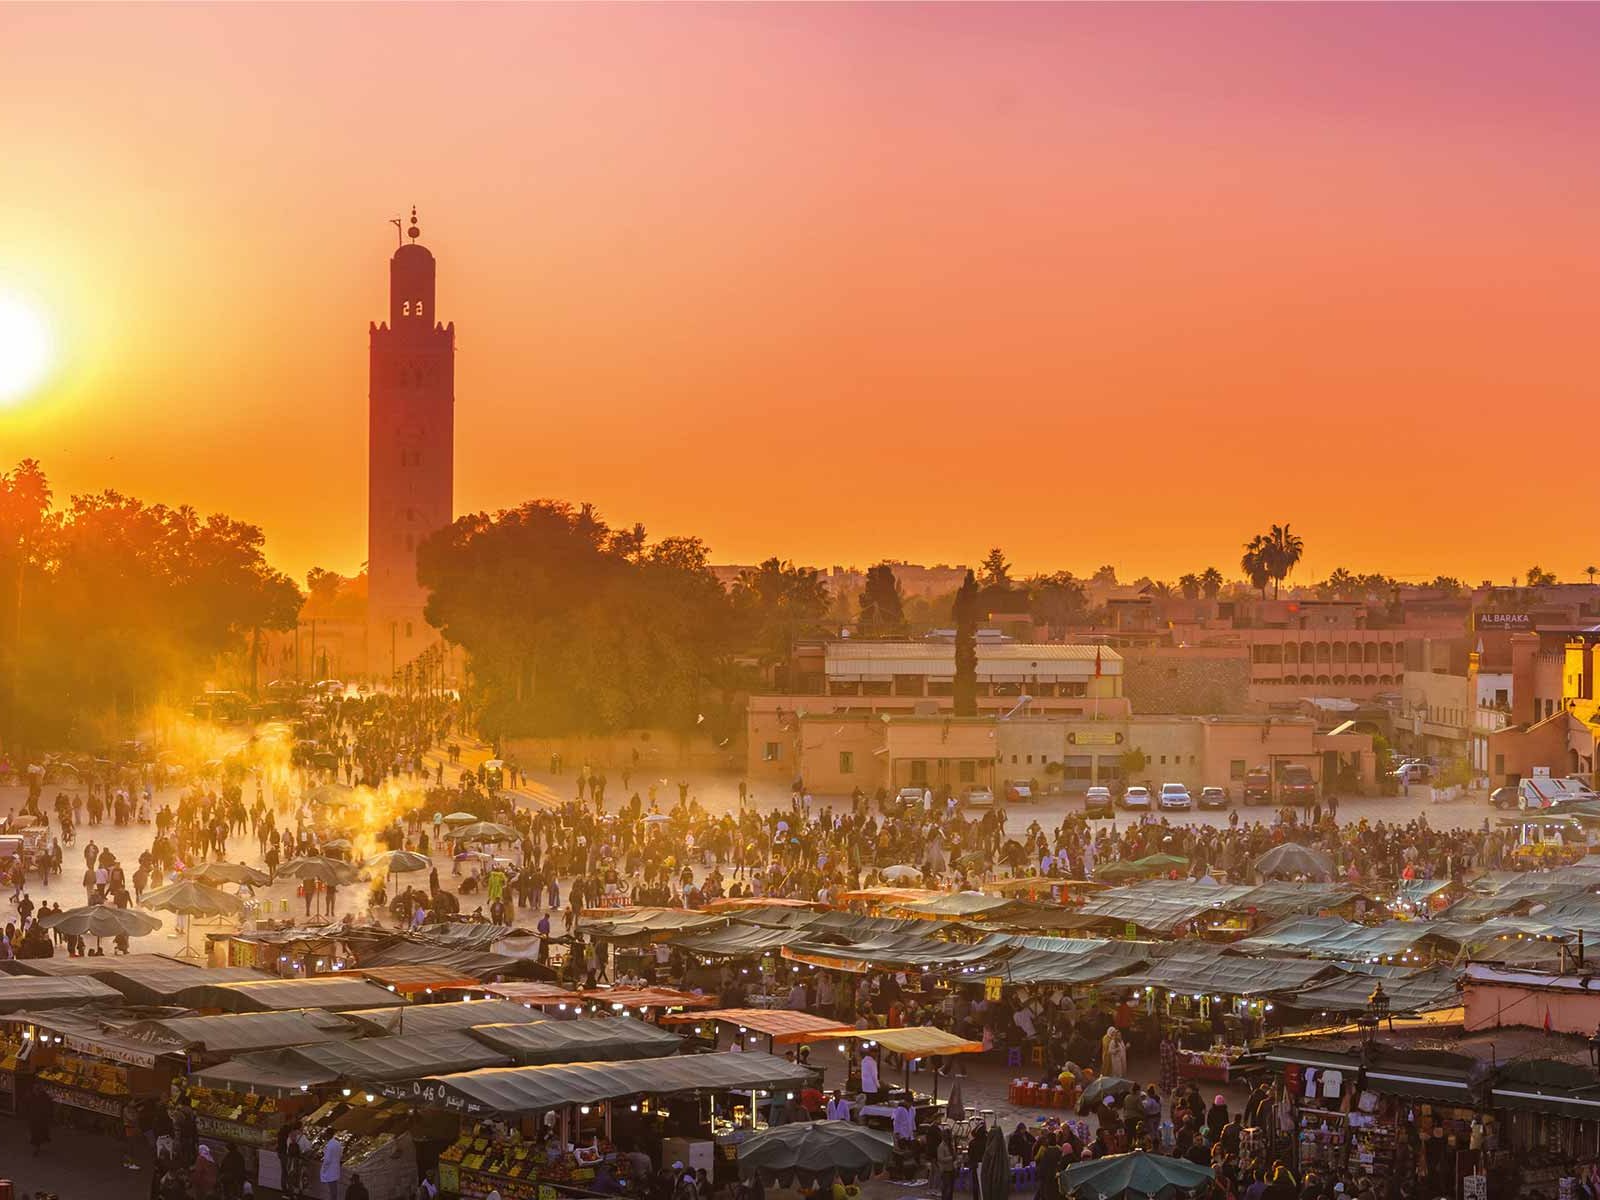 Der Djemaa el Fna ist das pulsierende Zentrum Marrakeschs. Allabendlich verwandelt sich der Platz in eine bunte Welt aus unzähligen Imbissständen, Gauklern, Straßenmusikern, und Schlangenbeschwörern.